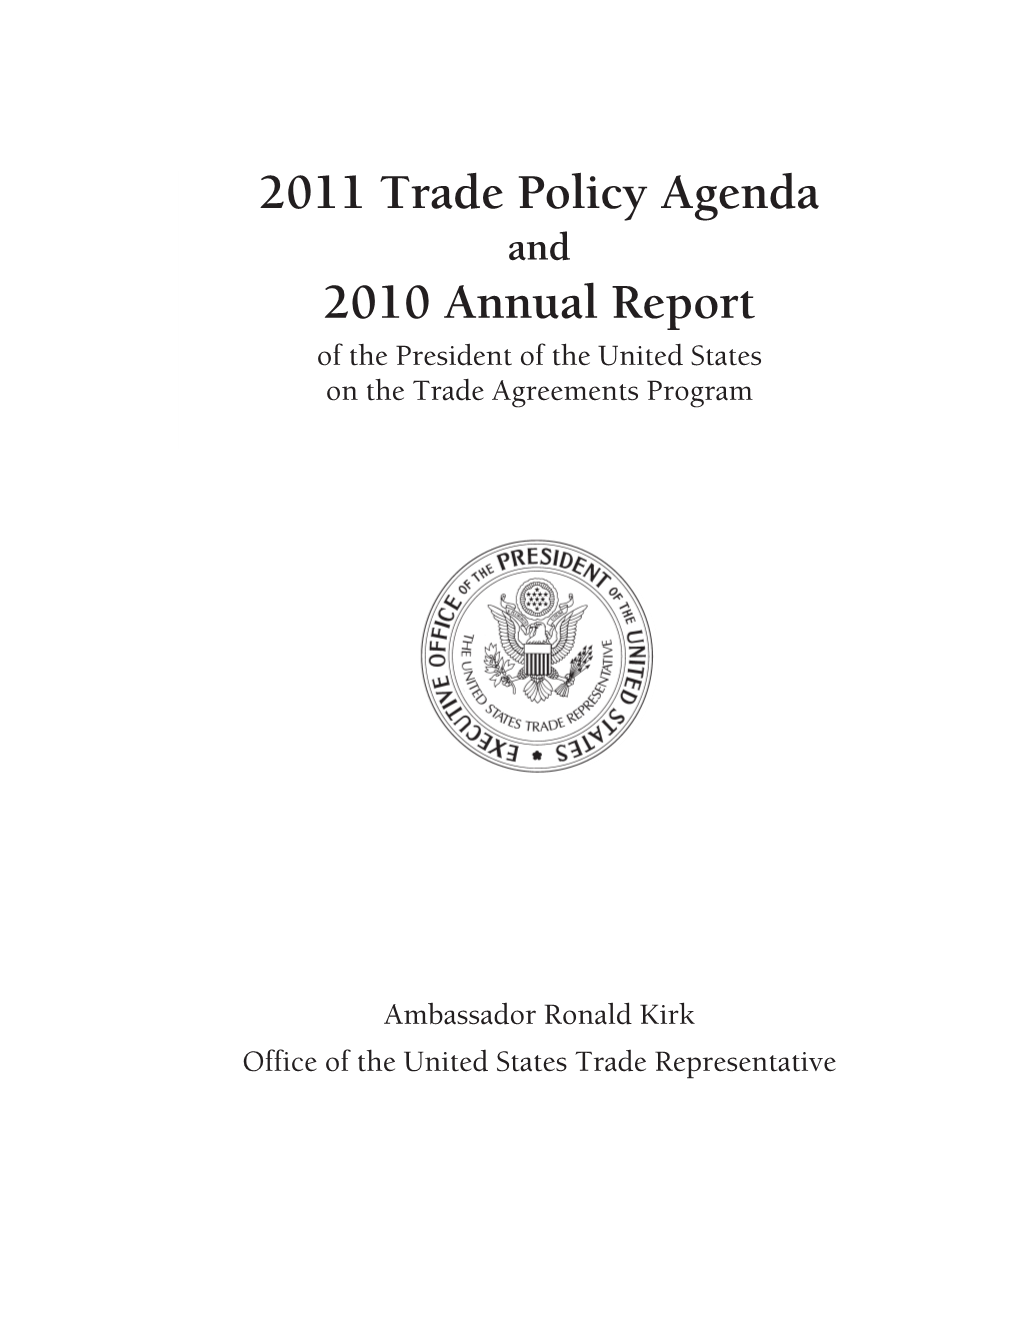 2011 Trade Policy Agenda 2010 Annual Report